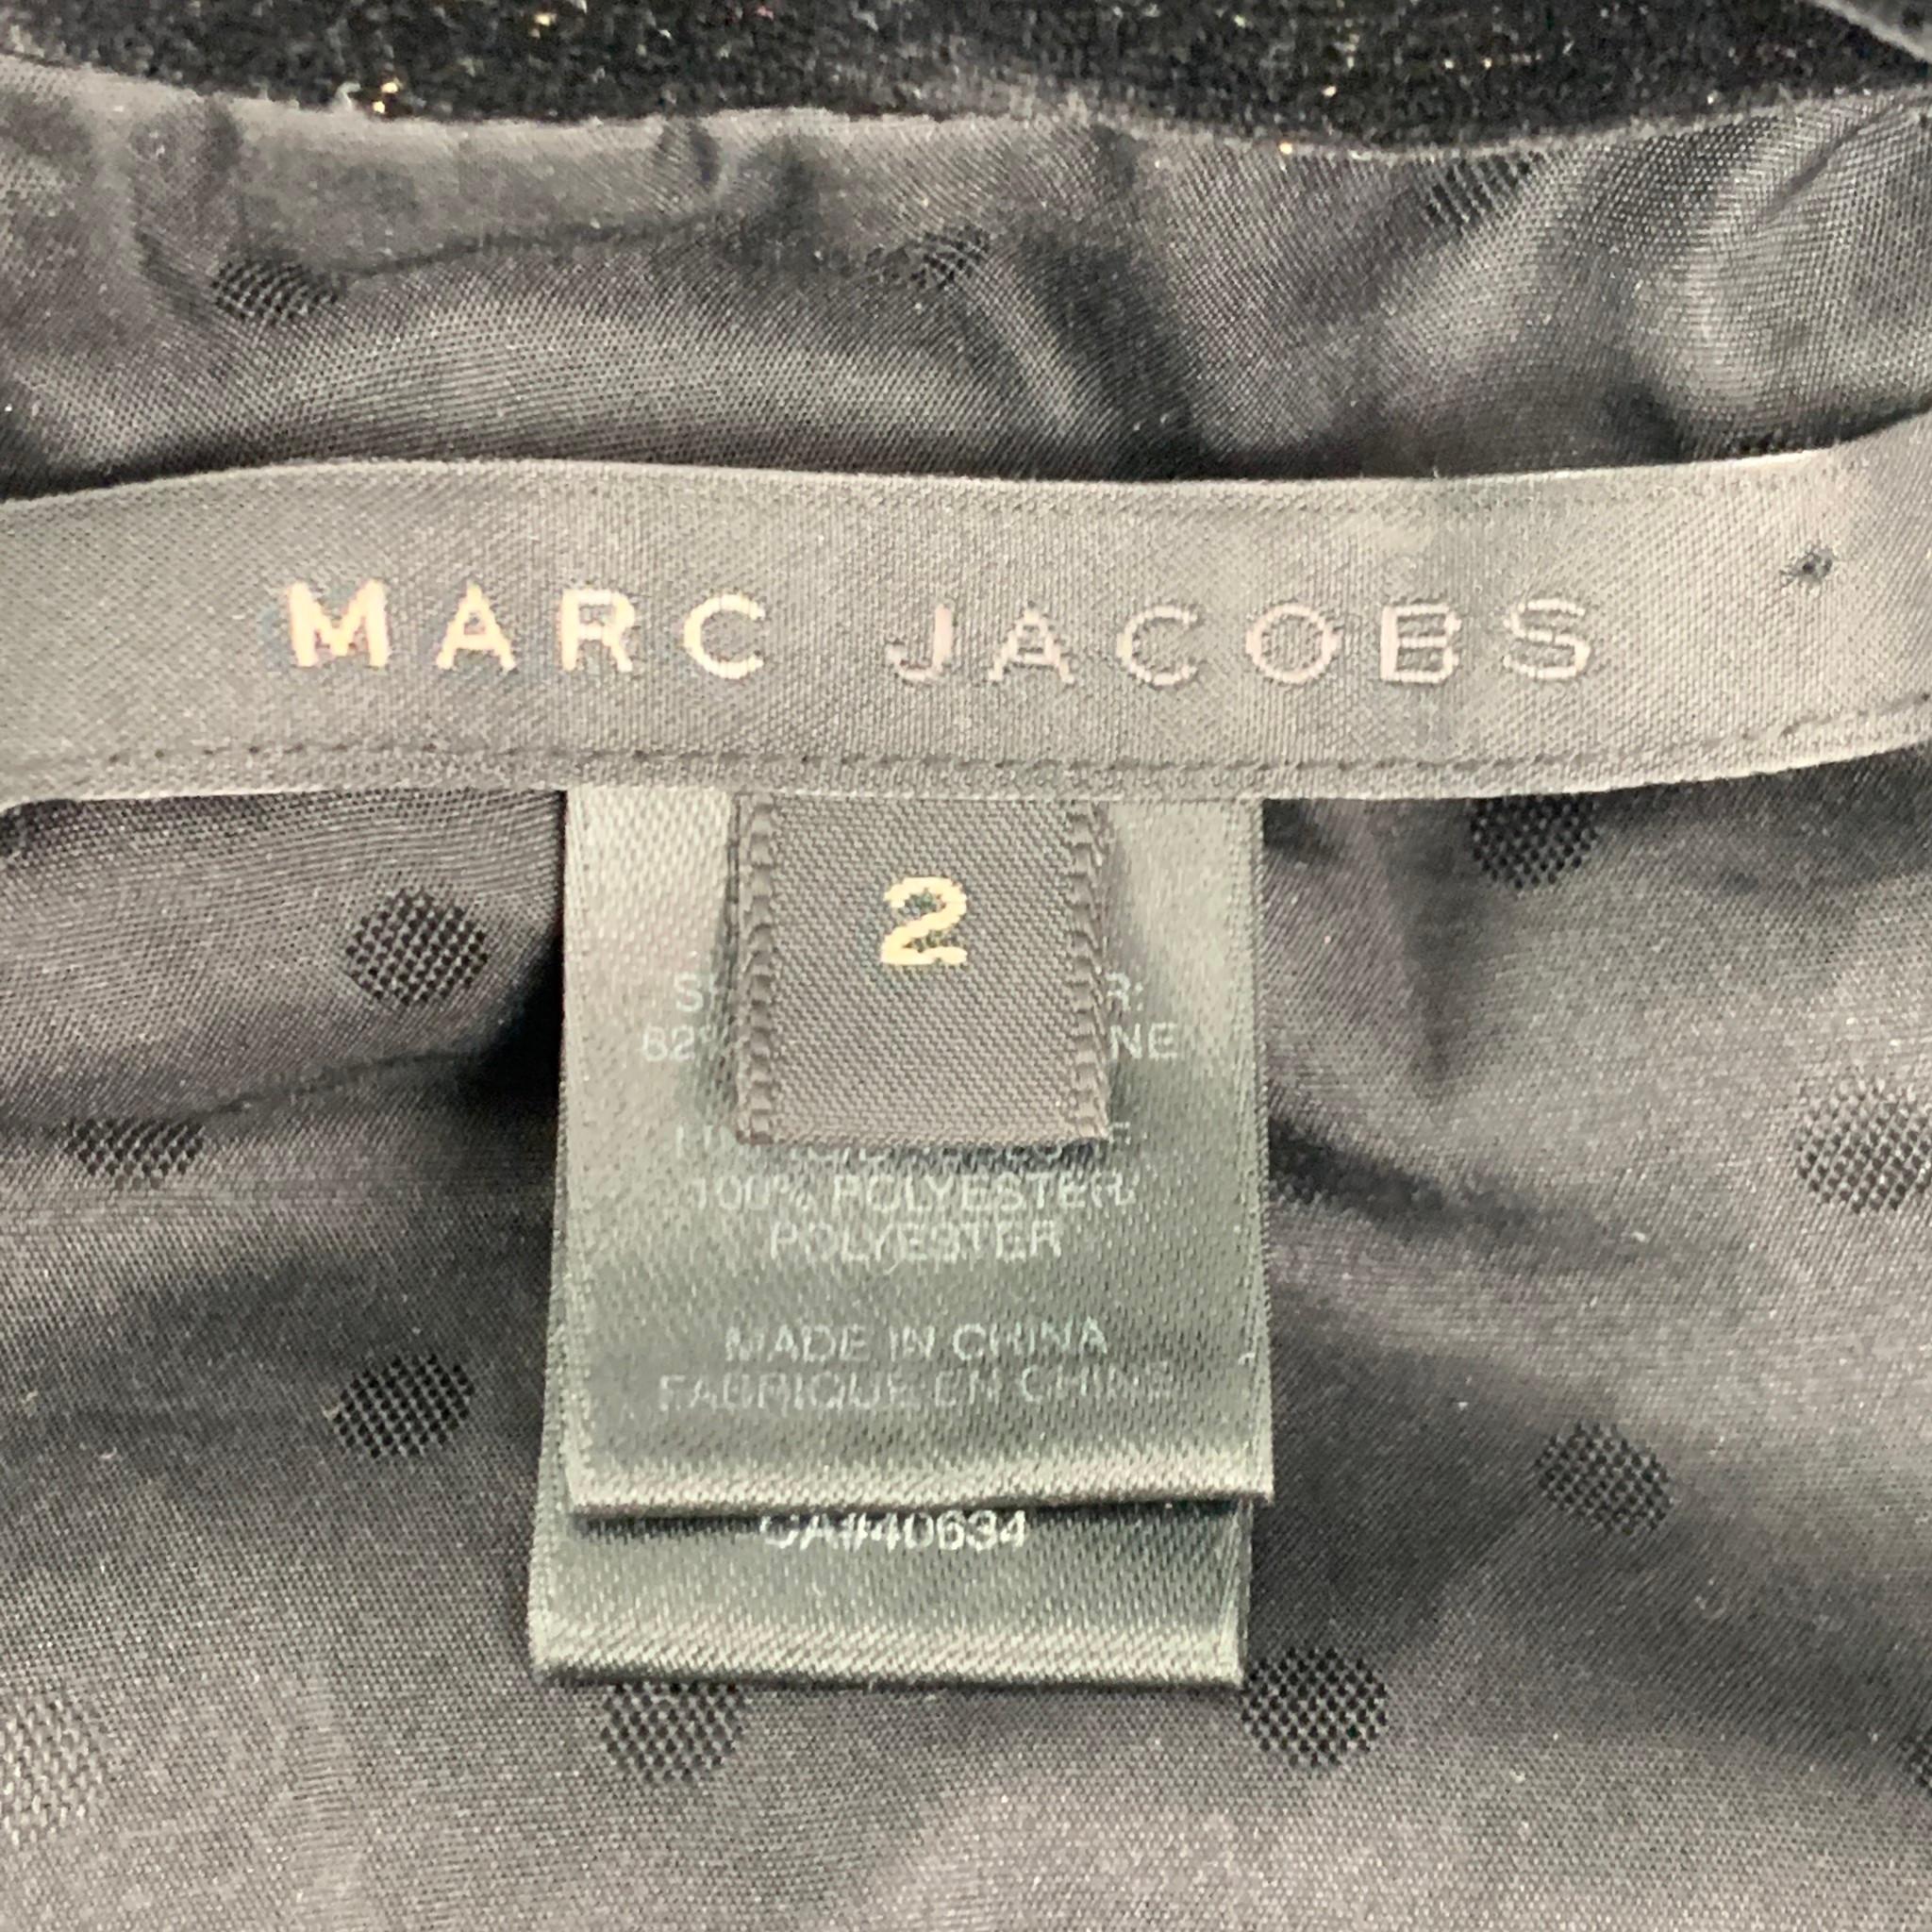 MARC JACOBS Size 2 Black Rayon Blend Velvet Jacket 1